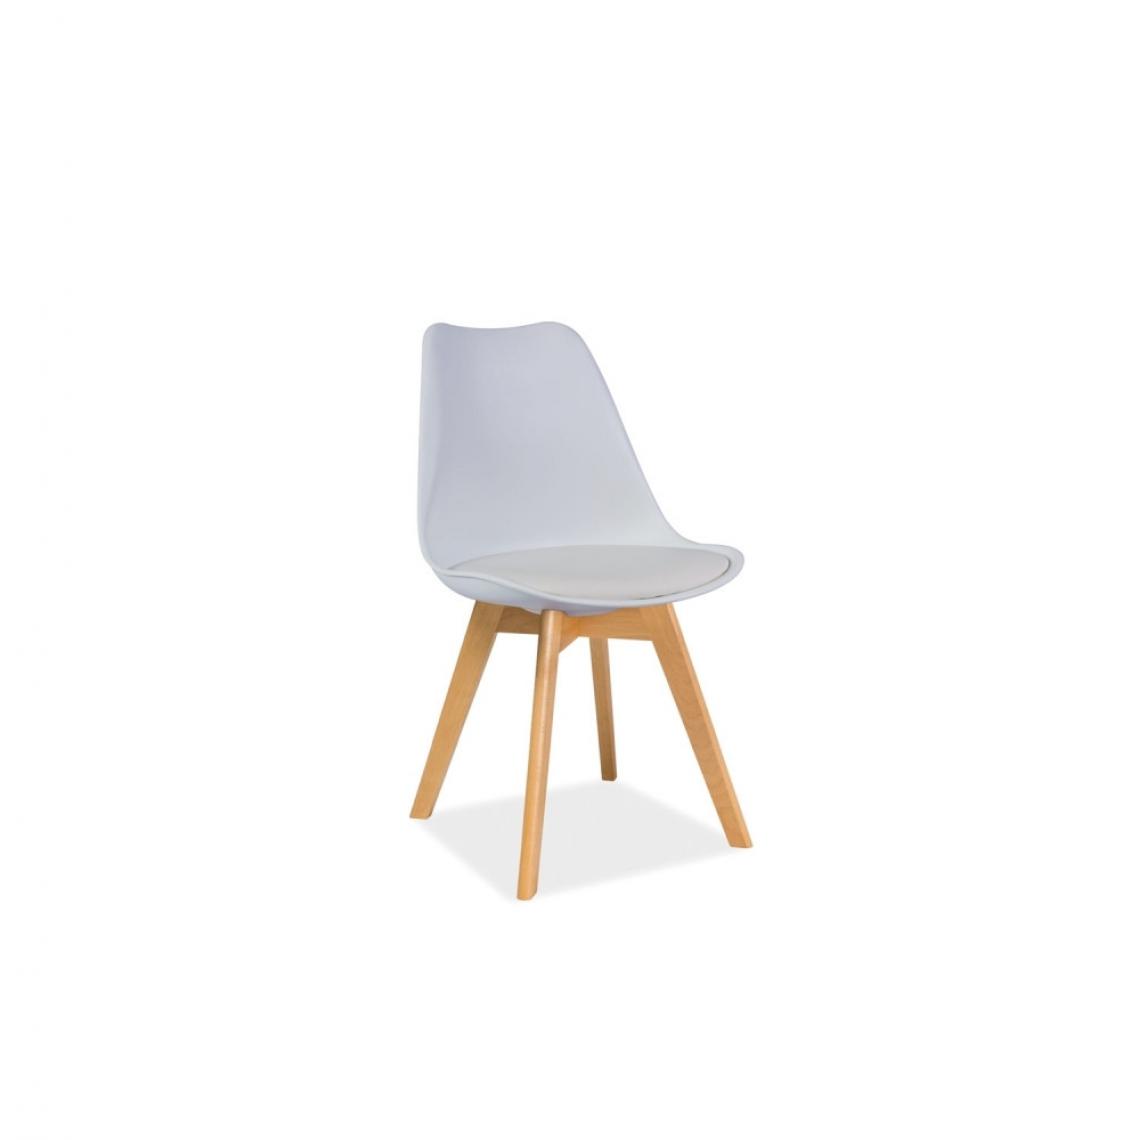 Ac-Deco - Chaise - Kris - 49 x 41 x 83 cm - Cadre en bois couleur hêtre - Blanc - Chaises